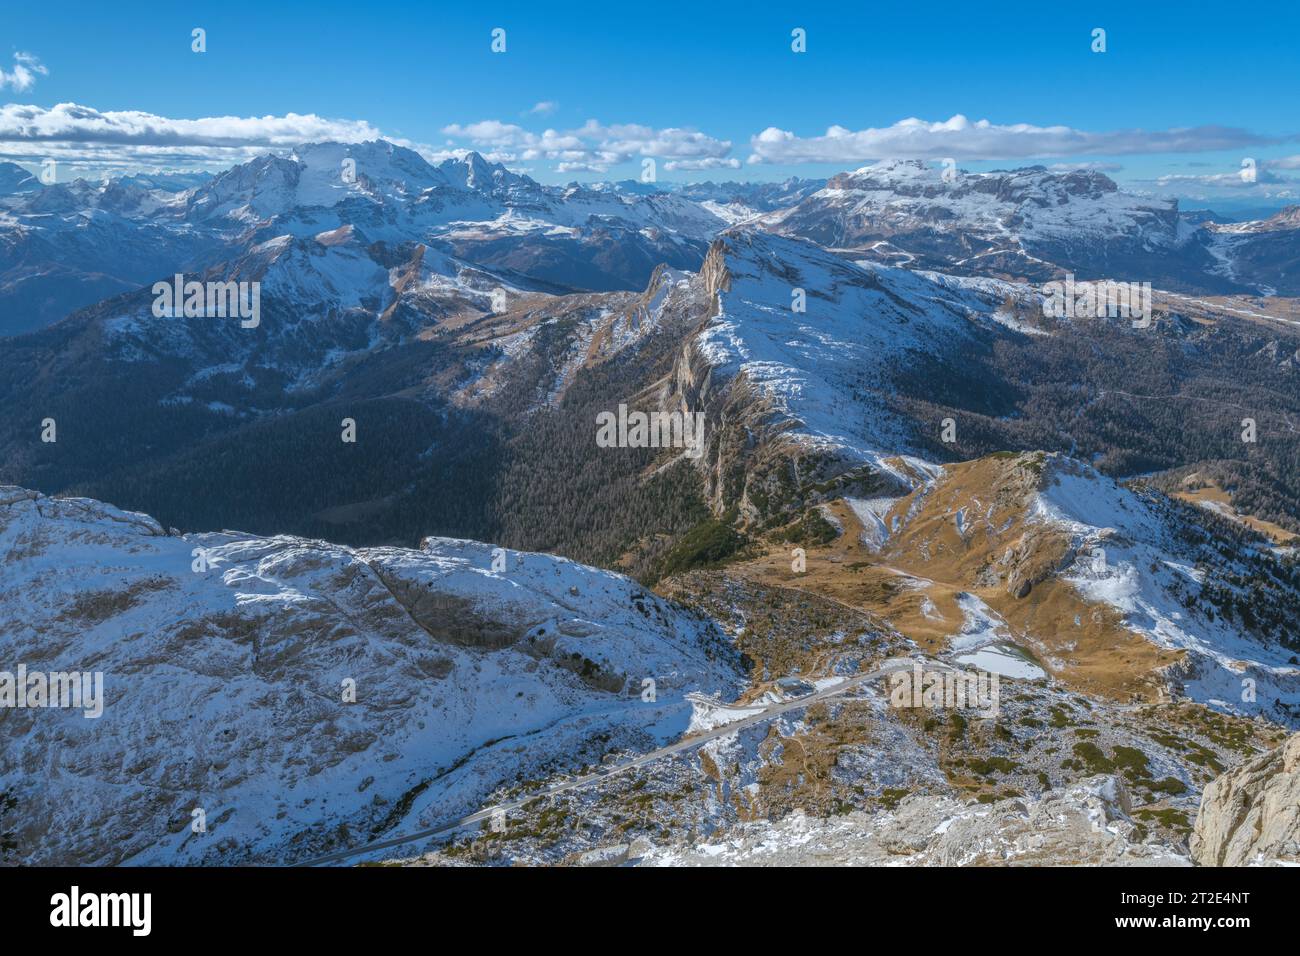 Vue panoramique depuis le sommet du mont Lagazuoi dans les Dolomites italiennes. Paysage montagneux enneigé surplombant la célèbre montagne Marmolada. Banque D'Images